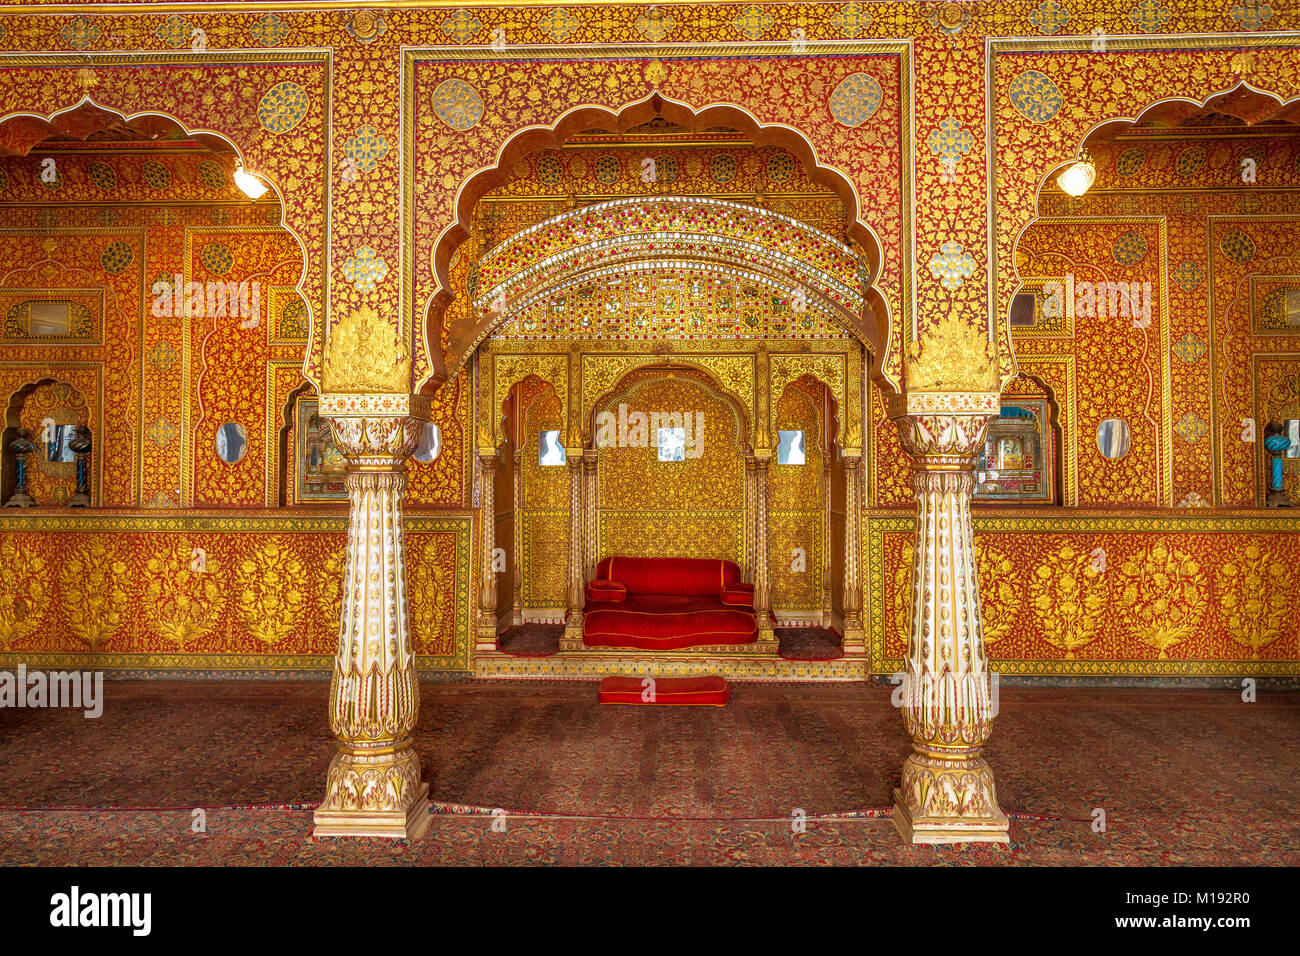 Junagarh Fort Bikaner Rajasthan Royal Palace Innenarchitektur details mit Kaiser Thron und Glas Gold artwork Dekorationen. Stockfoto